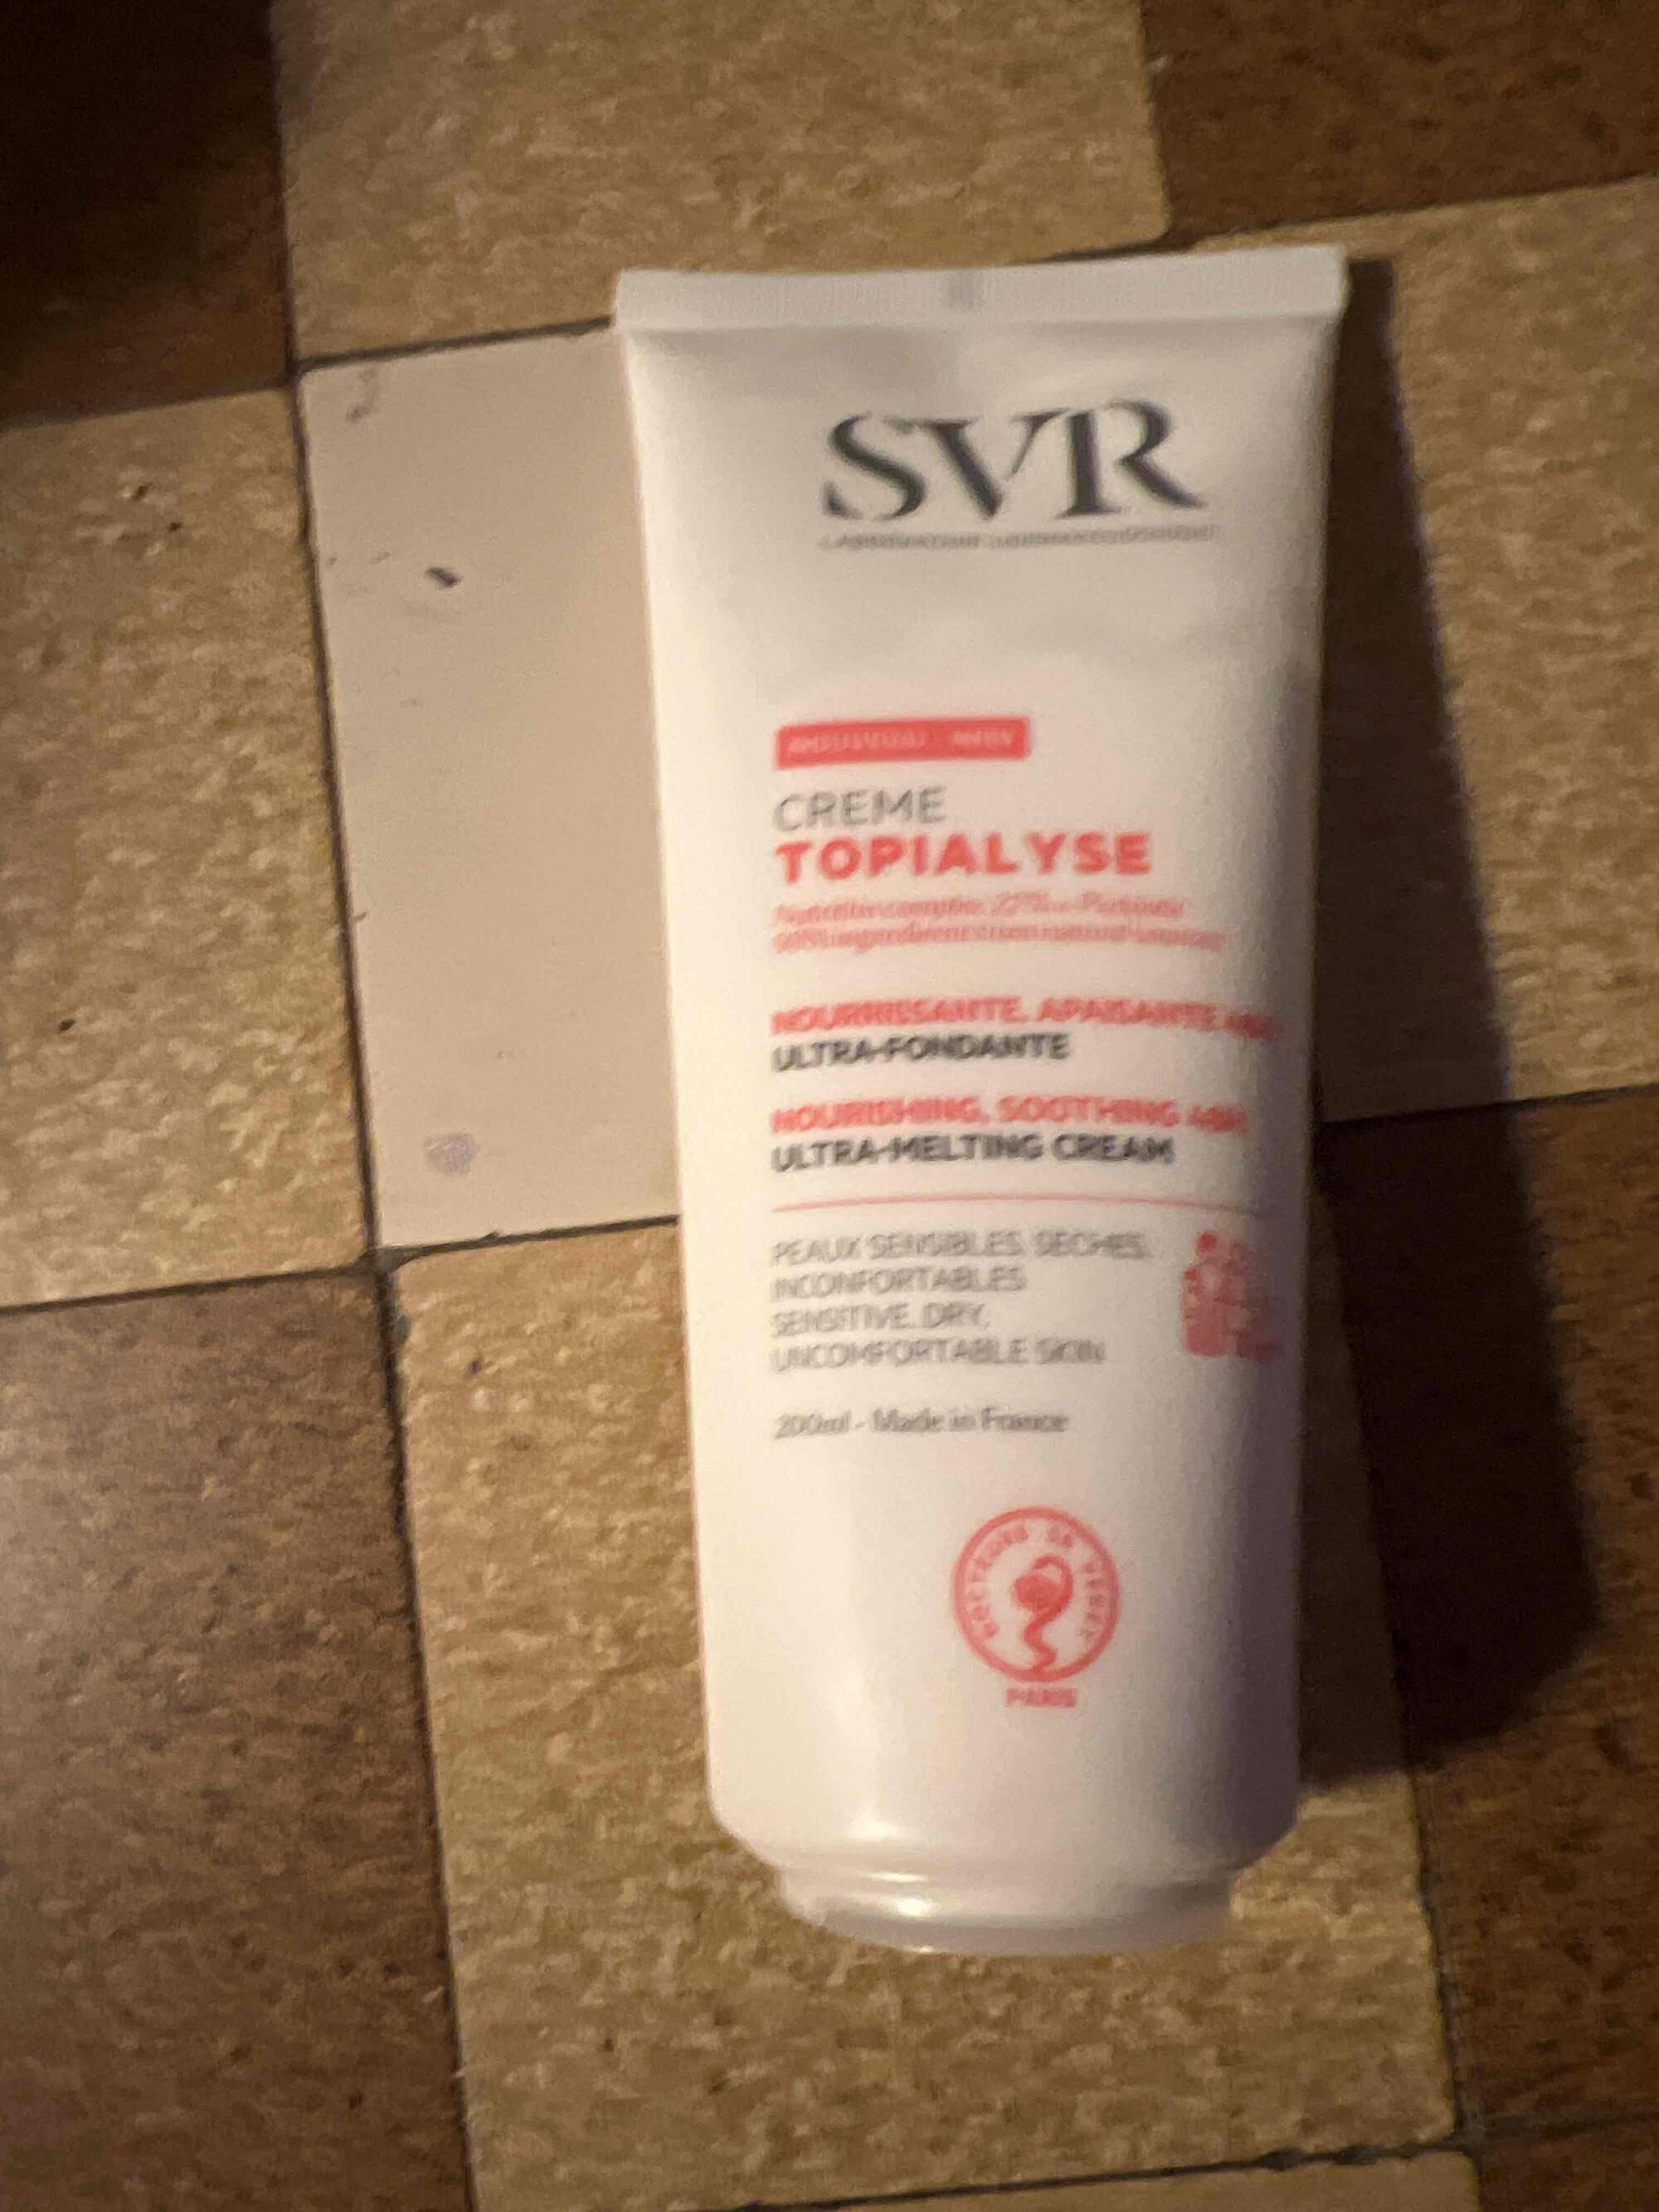 SVR - Topialyse - Crème nourrissante apaisante